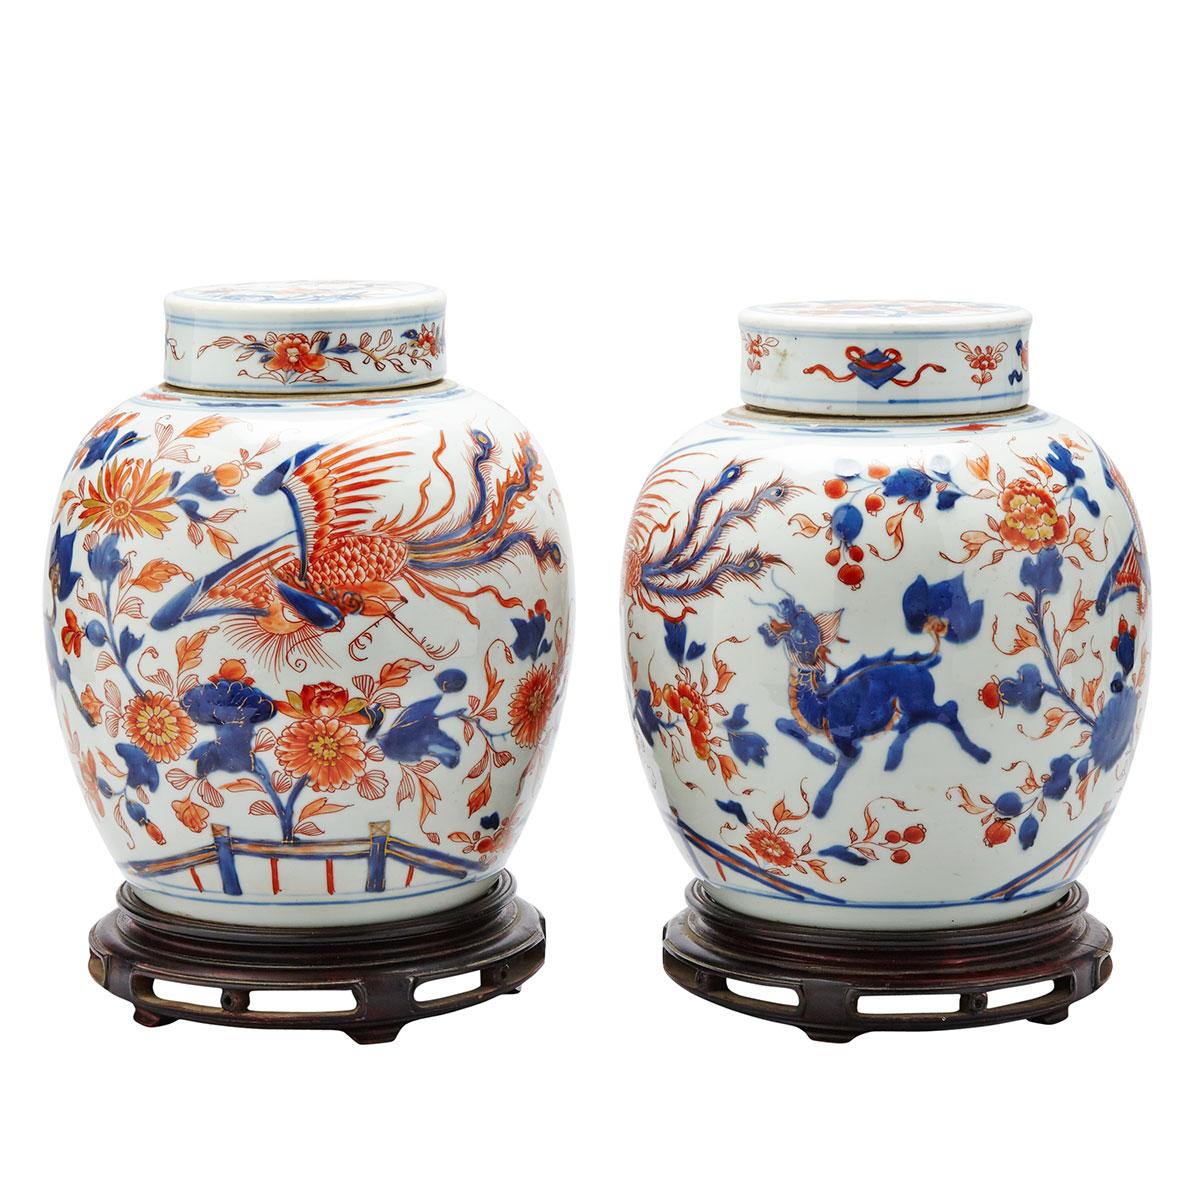 Pair of Export Chinese Imari Ginger Jars, 18th Century